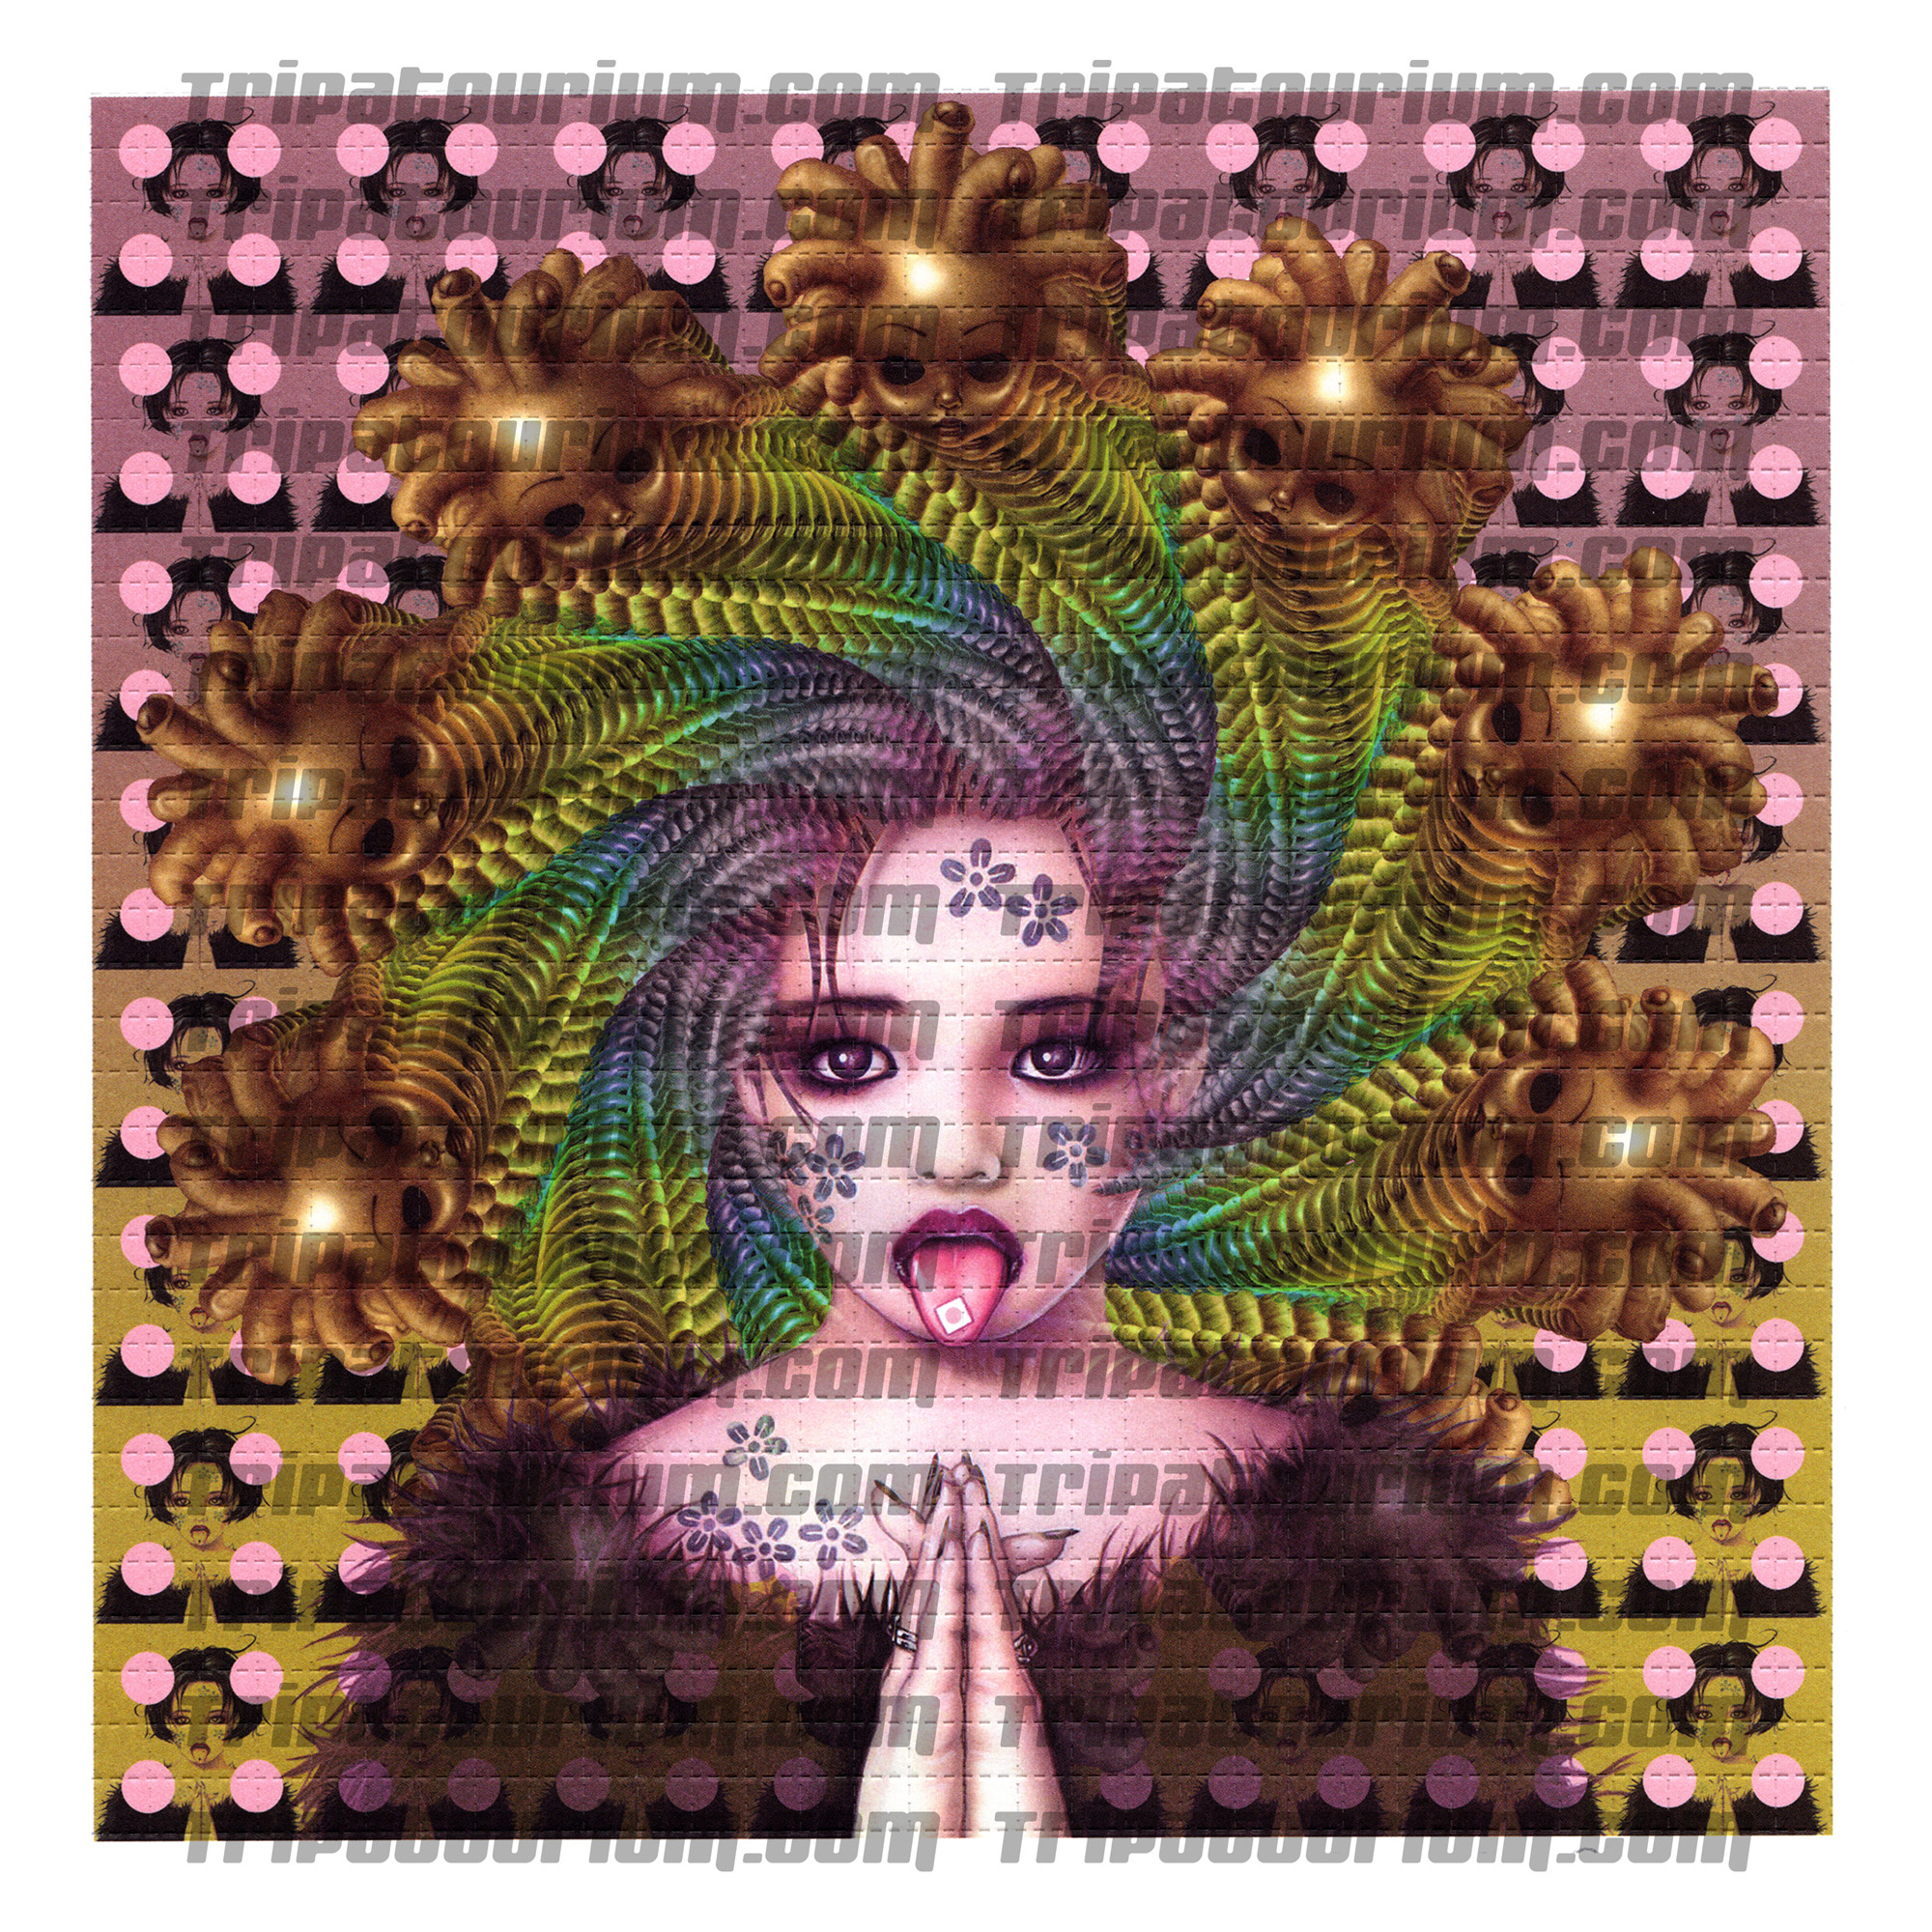 A scan of the LSD Blotter Art Print Little Strange Dots by Trevor Brown